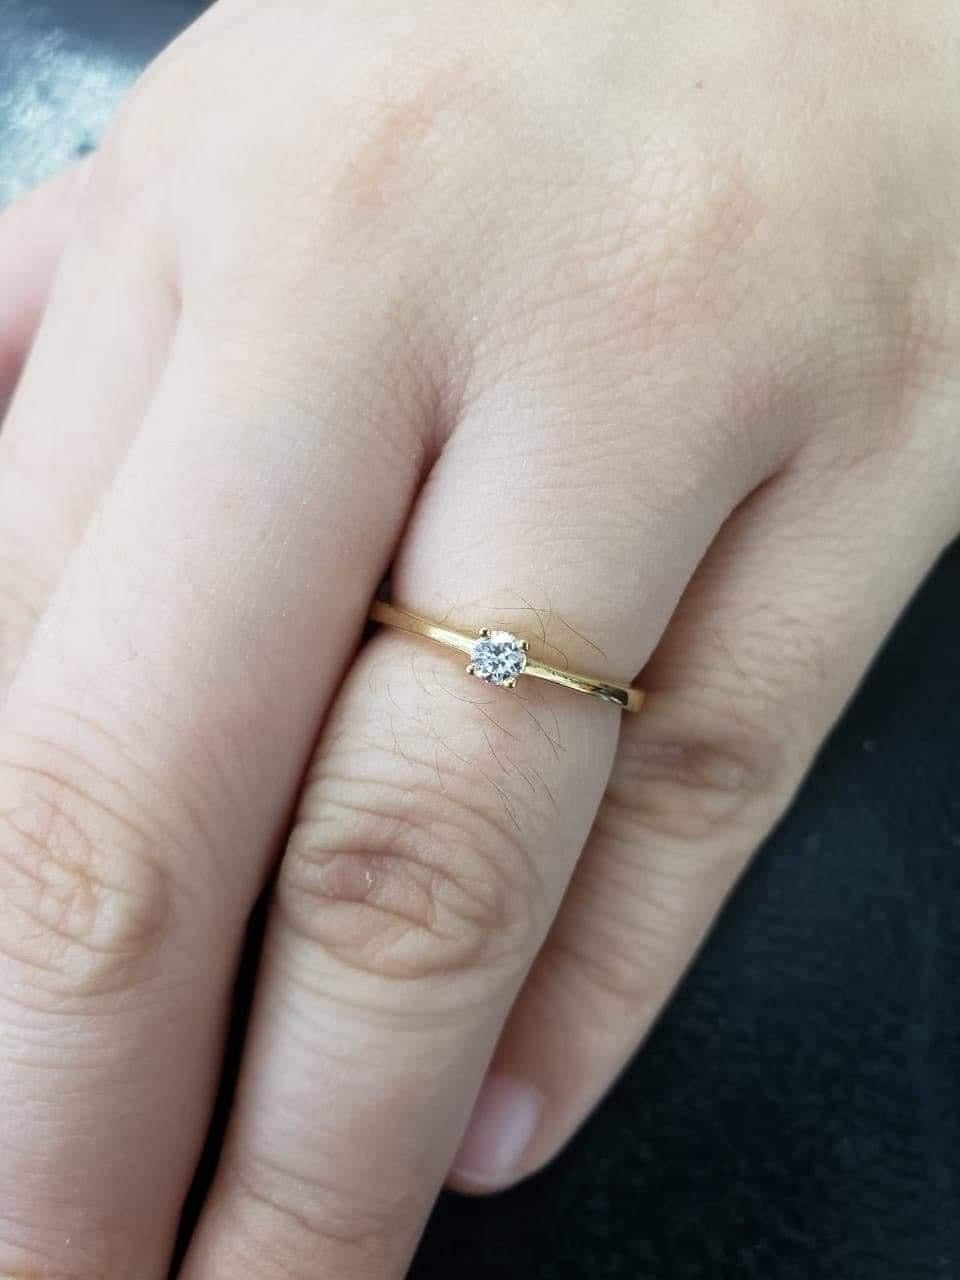 Diamond Engagement Ring, Ladies' Ring, Anniversary Gift, Birthday Gift, 14K Gold, .10ct Diamond, SERENE